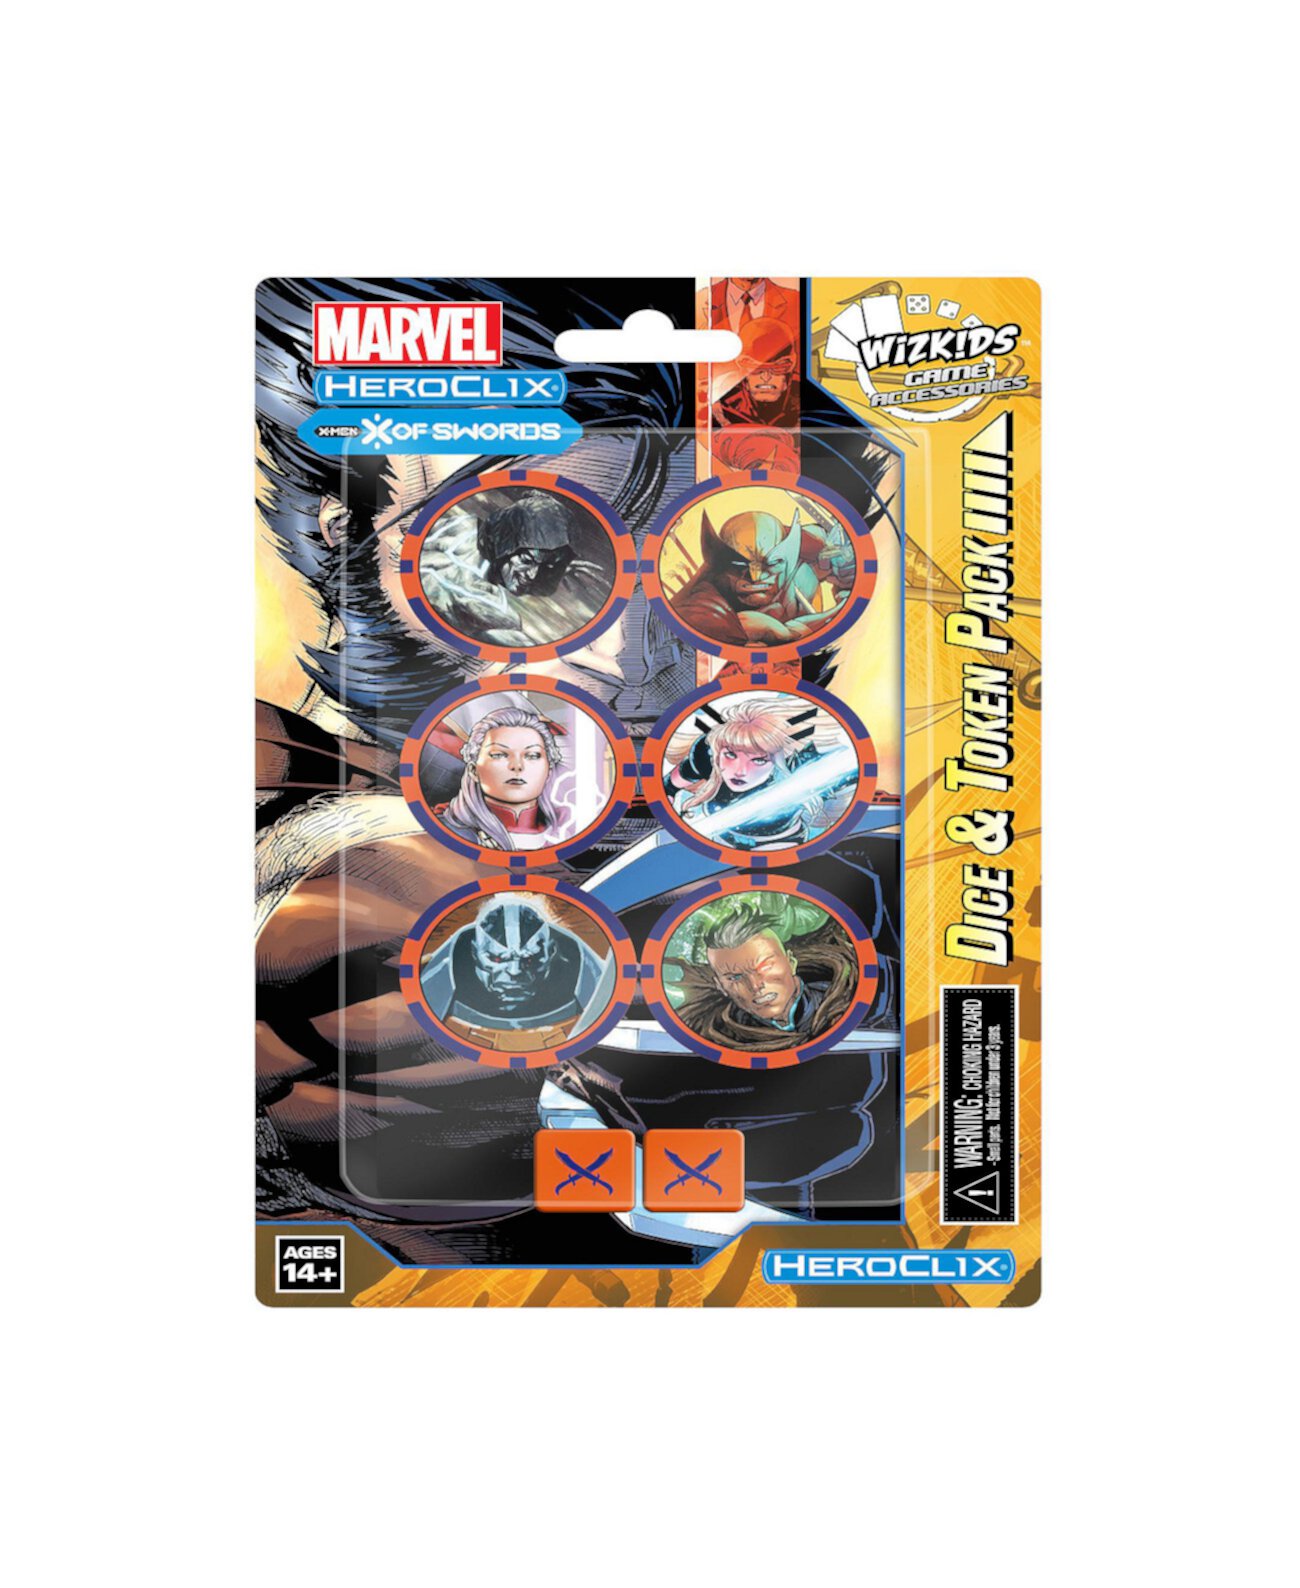 Игровой набор Marvel HeroClix X Men Miniatures, 8 предметов WizKids Games